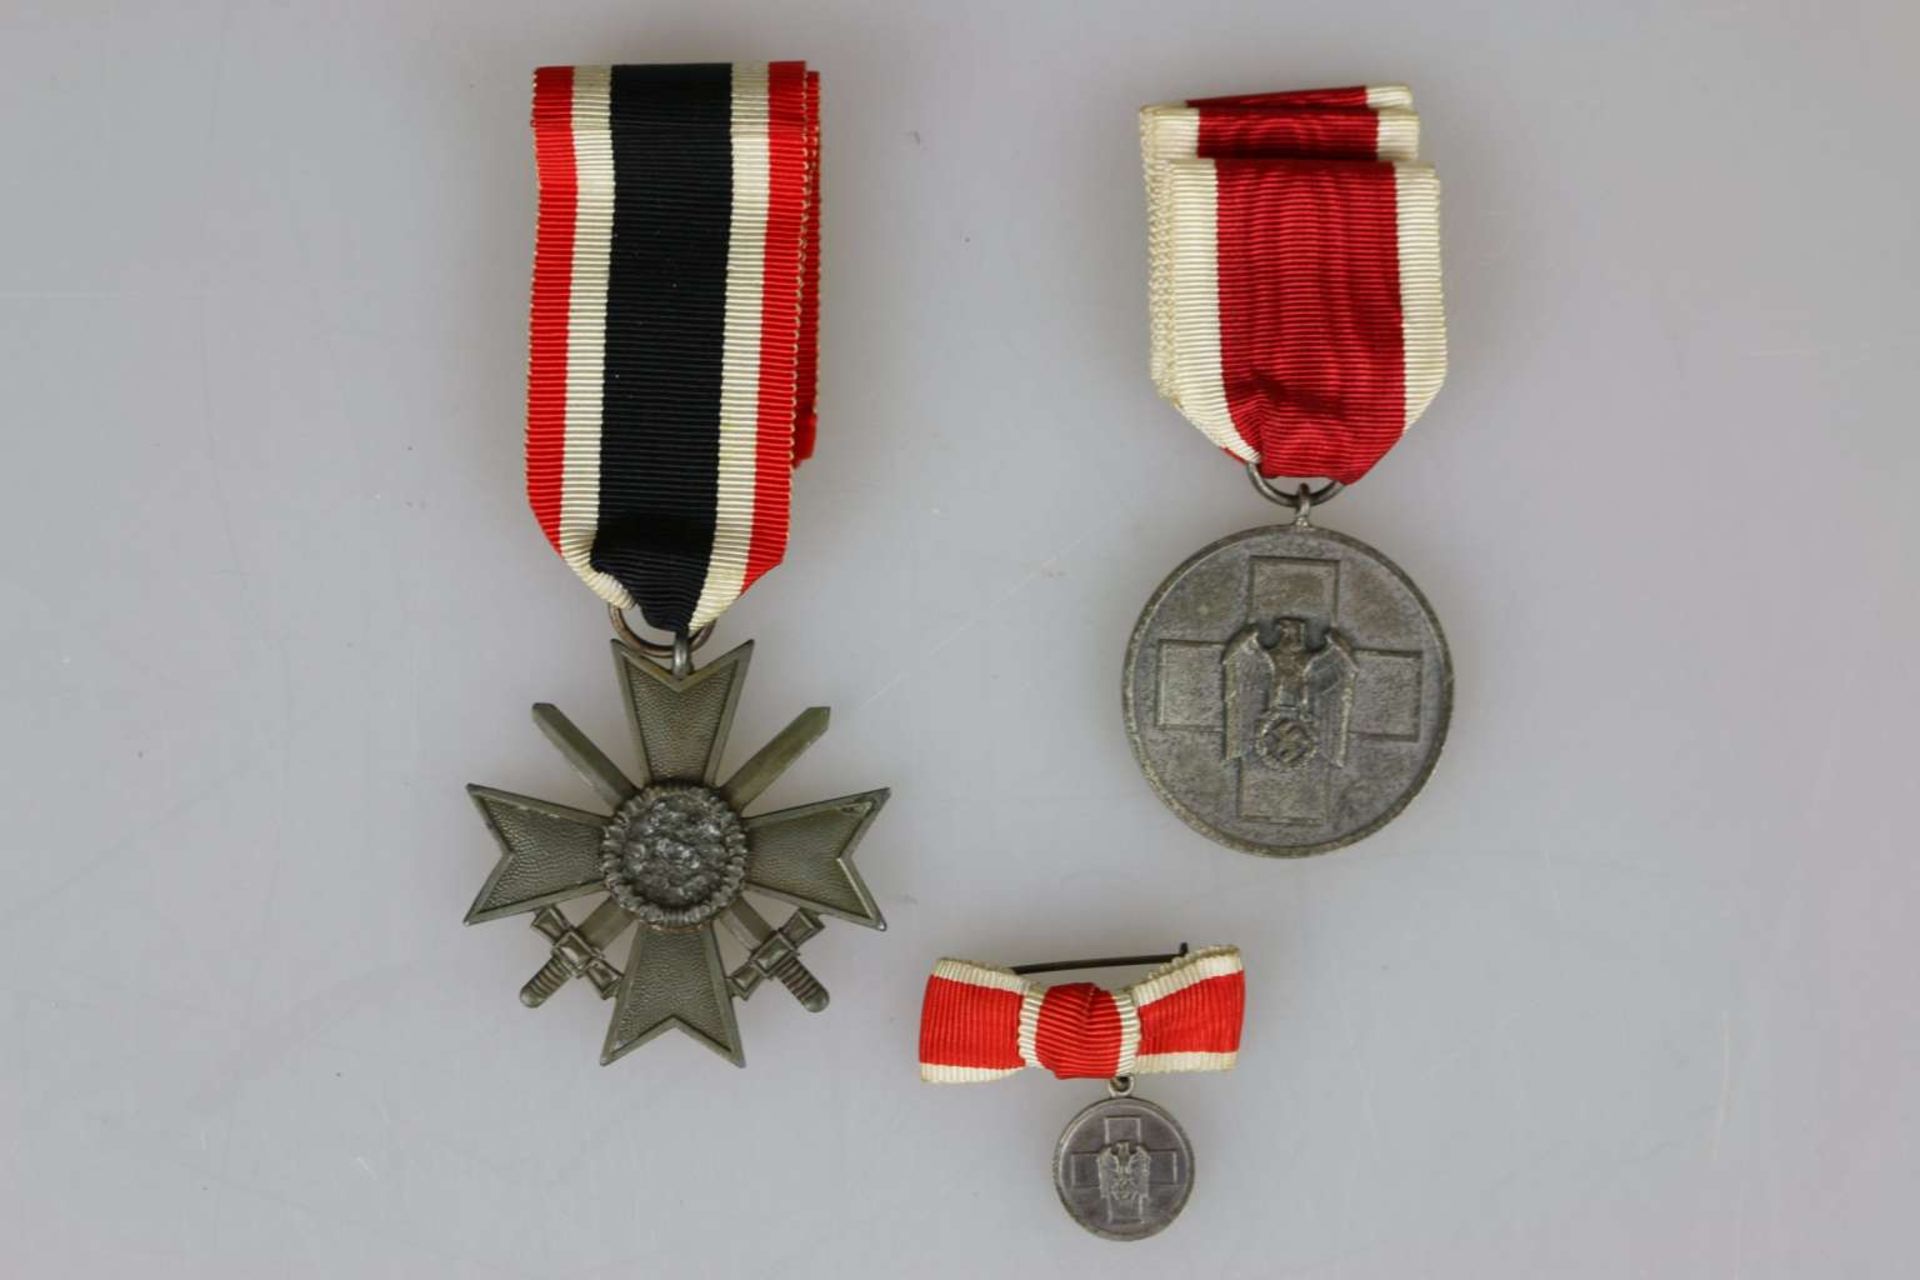 Medaille für deutsche Volkspflege am Band - Image 2 of 2